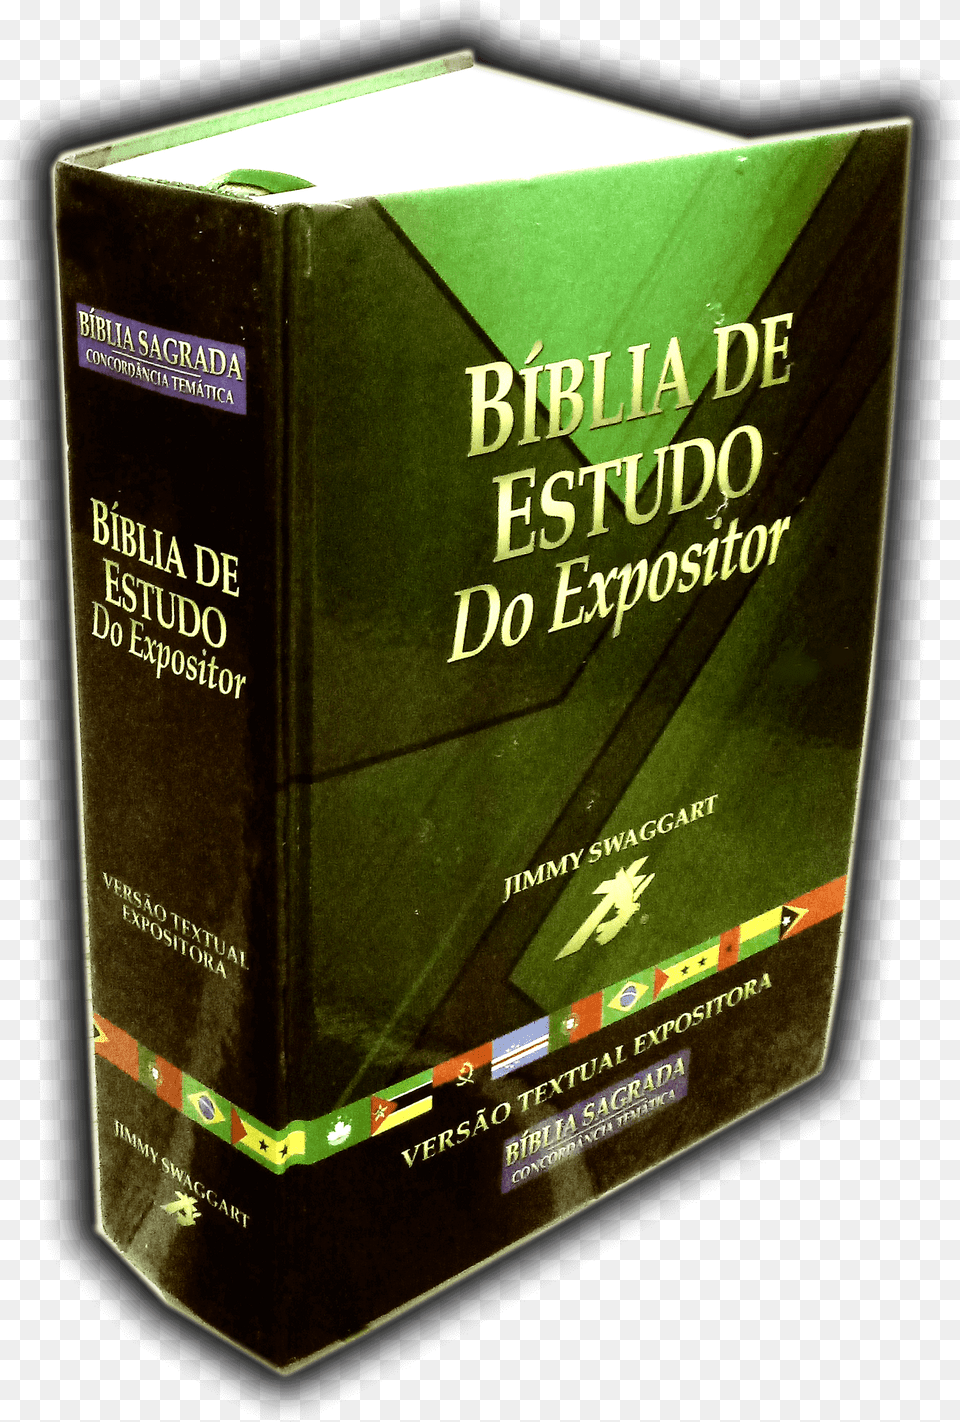 Bblia De Estudo Do Expositor, Book, Publication, Novel, Box Png